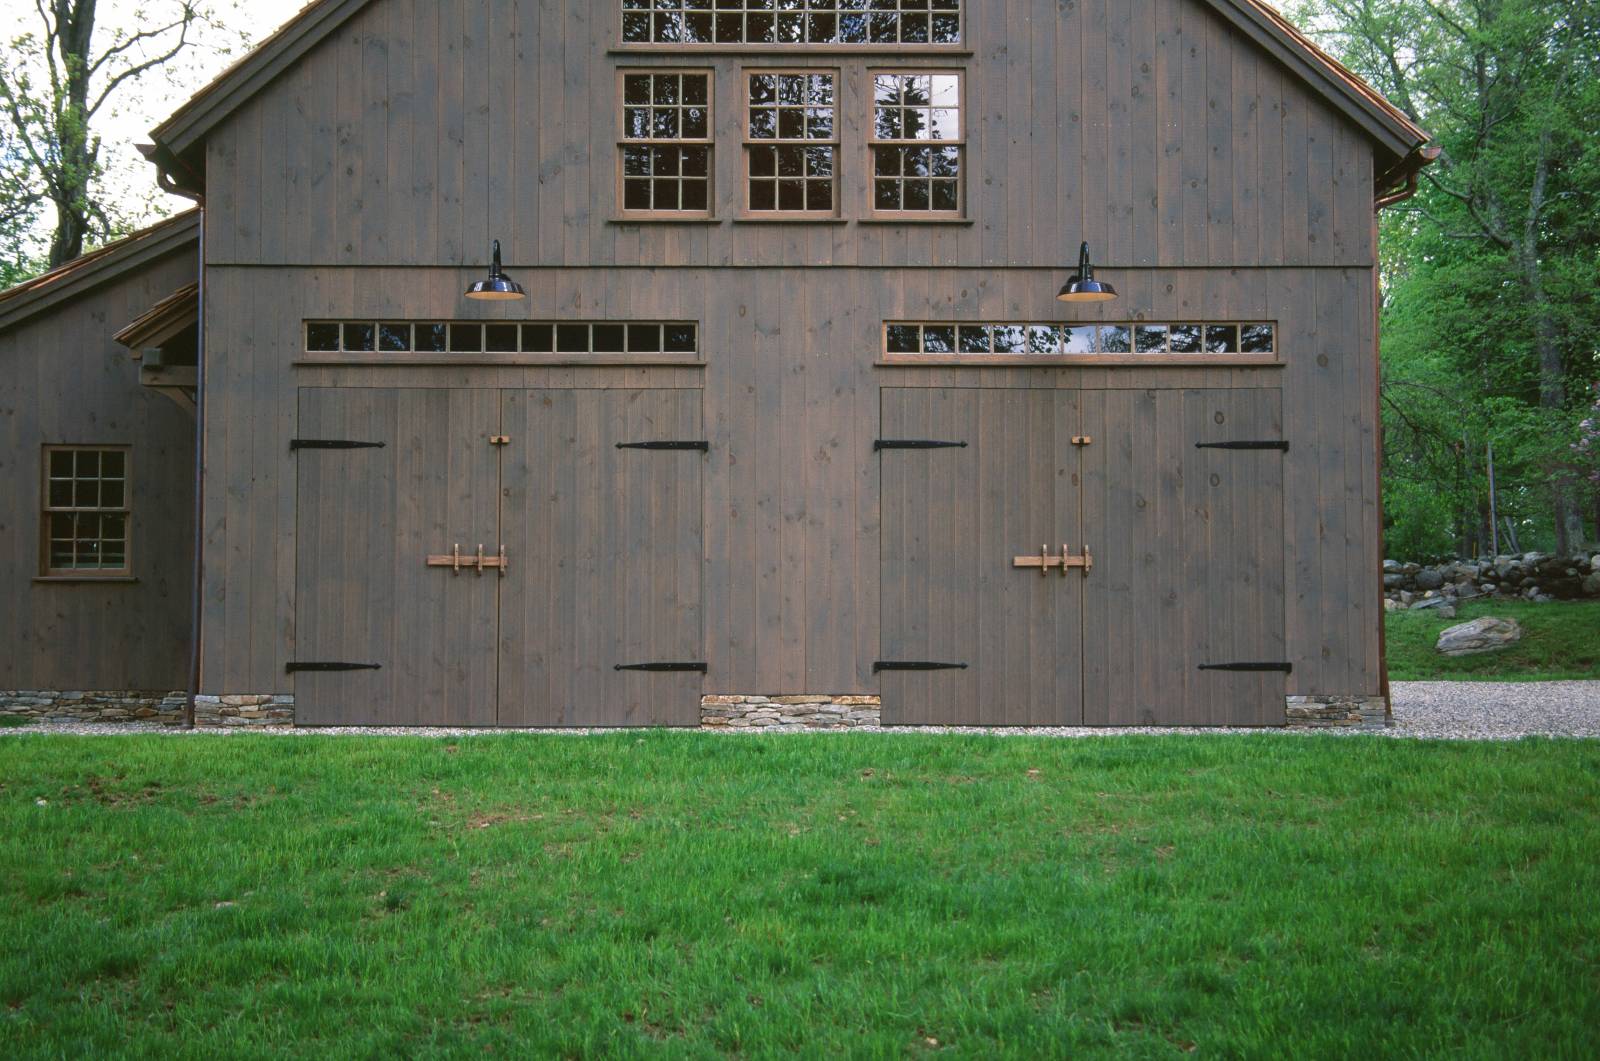 Double barn doors